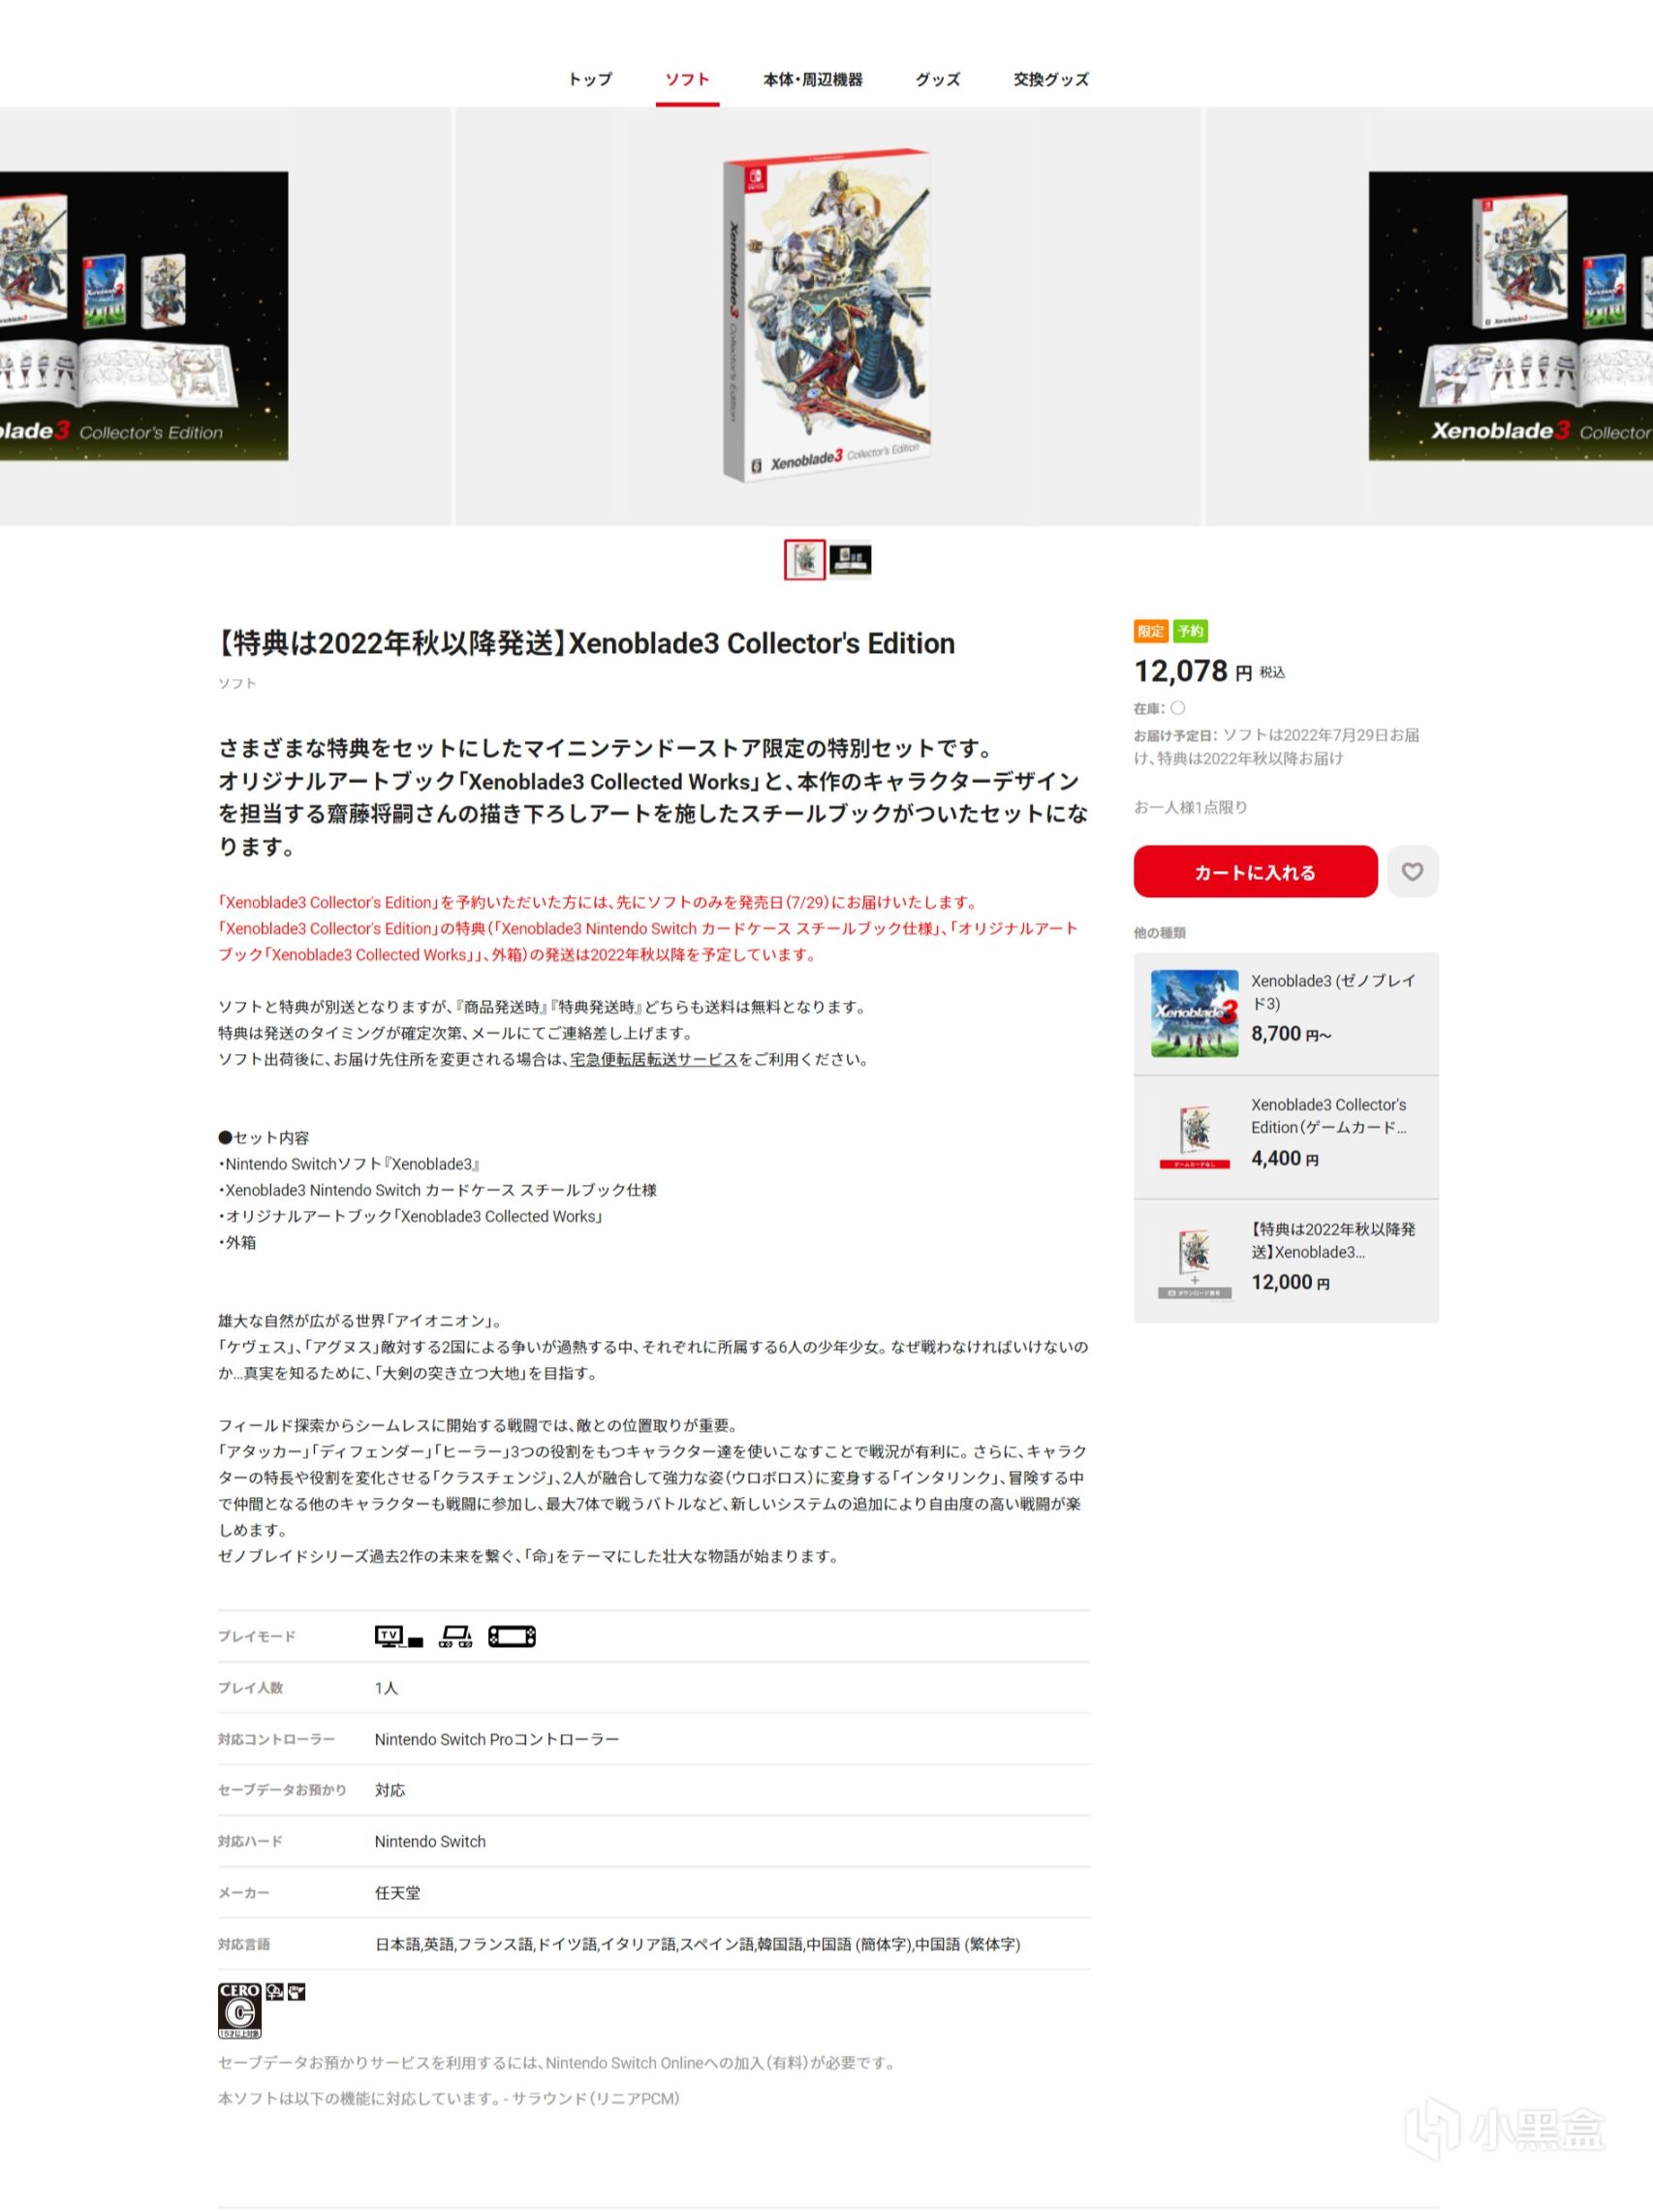 【PC游戏】每日游讯:《异度神剑3》反向跳票将于7月29号发售《神都不良探》将近日发售-第30张